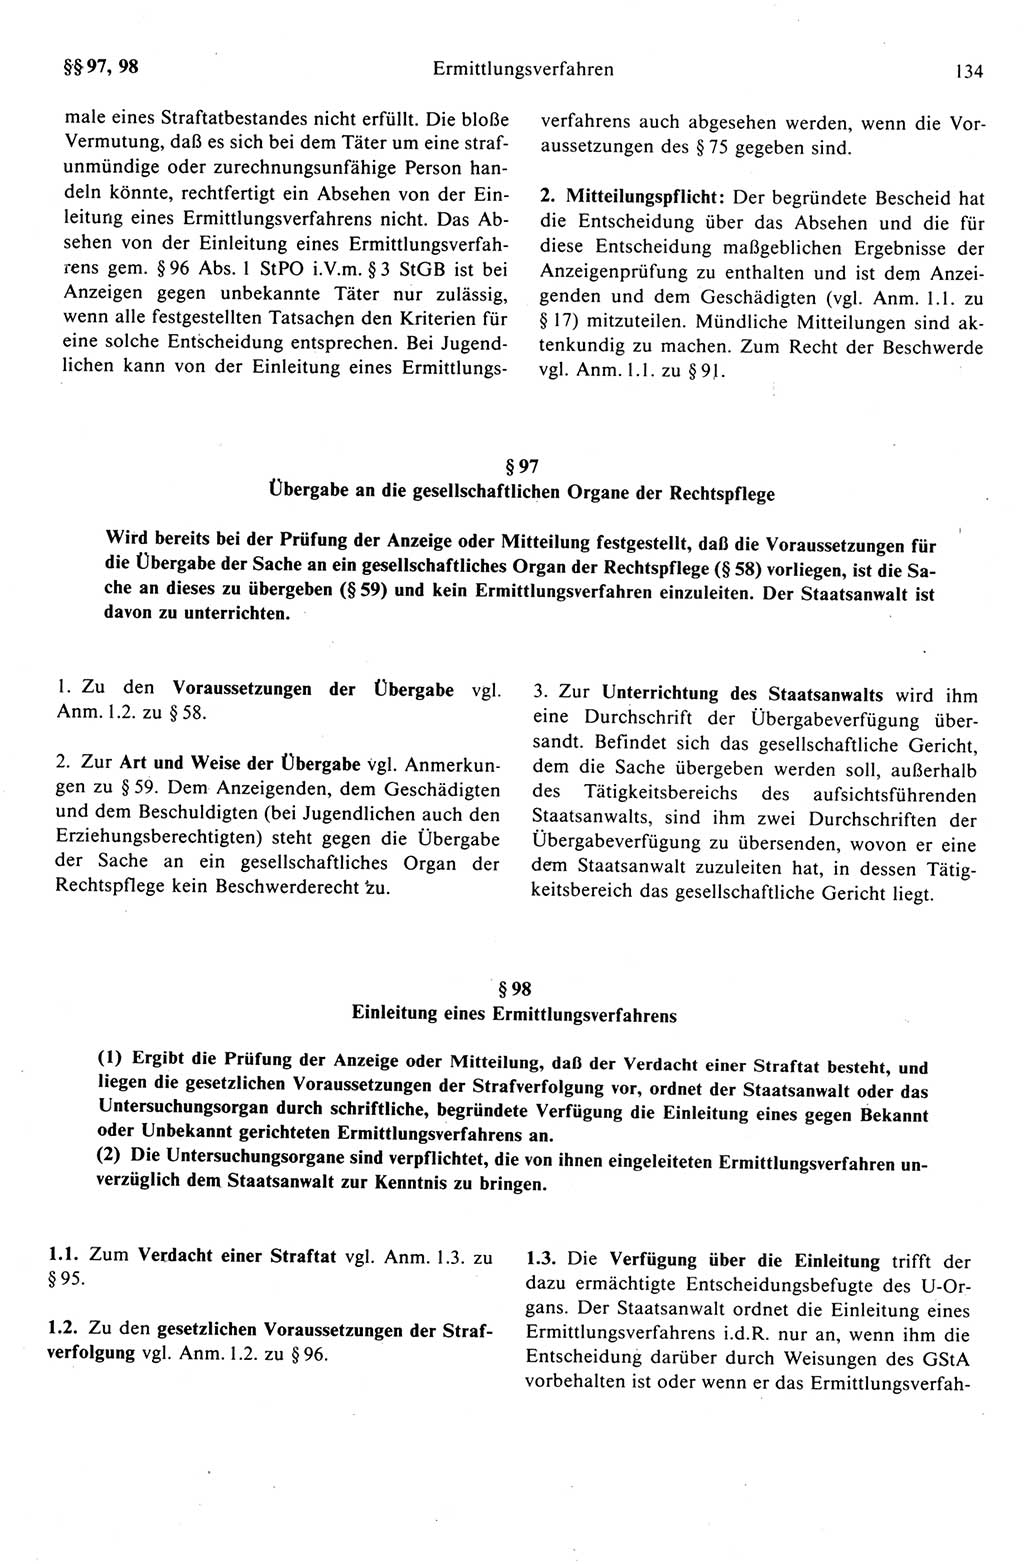 Strafprozeßrecht der DDR (Deutsche Demokratische Republik), Kommentar zur Strafprozeßordnung (StPO) 1989, Seite 134 (Strafprozeßr. DDR Komm. StPO 1989, S. 134)